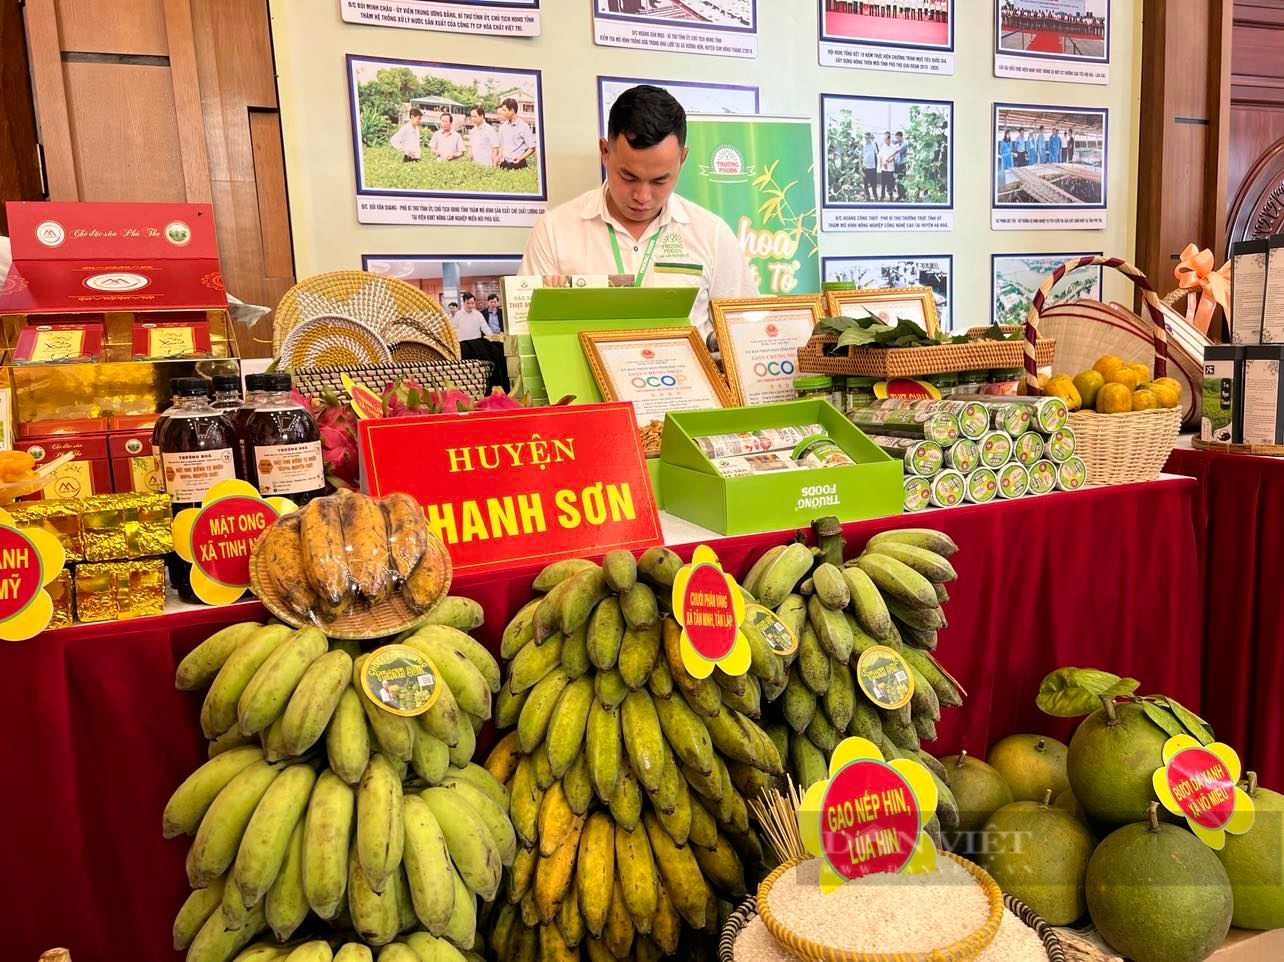 Bước chuyển lớn từ tư duy sản xuất sang tư duy kinh tế nông nghiệp của nông dân Phú Thọ - Ảnh 6.